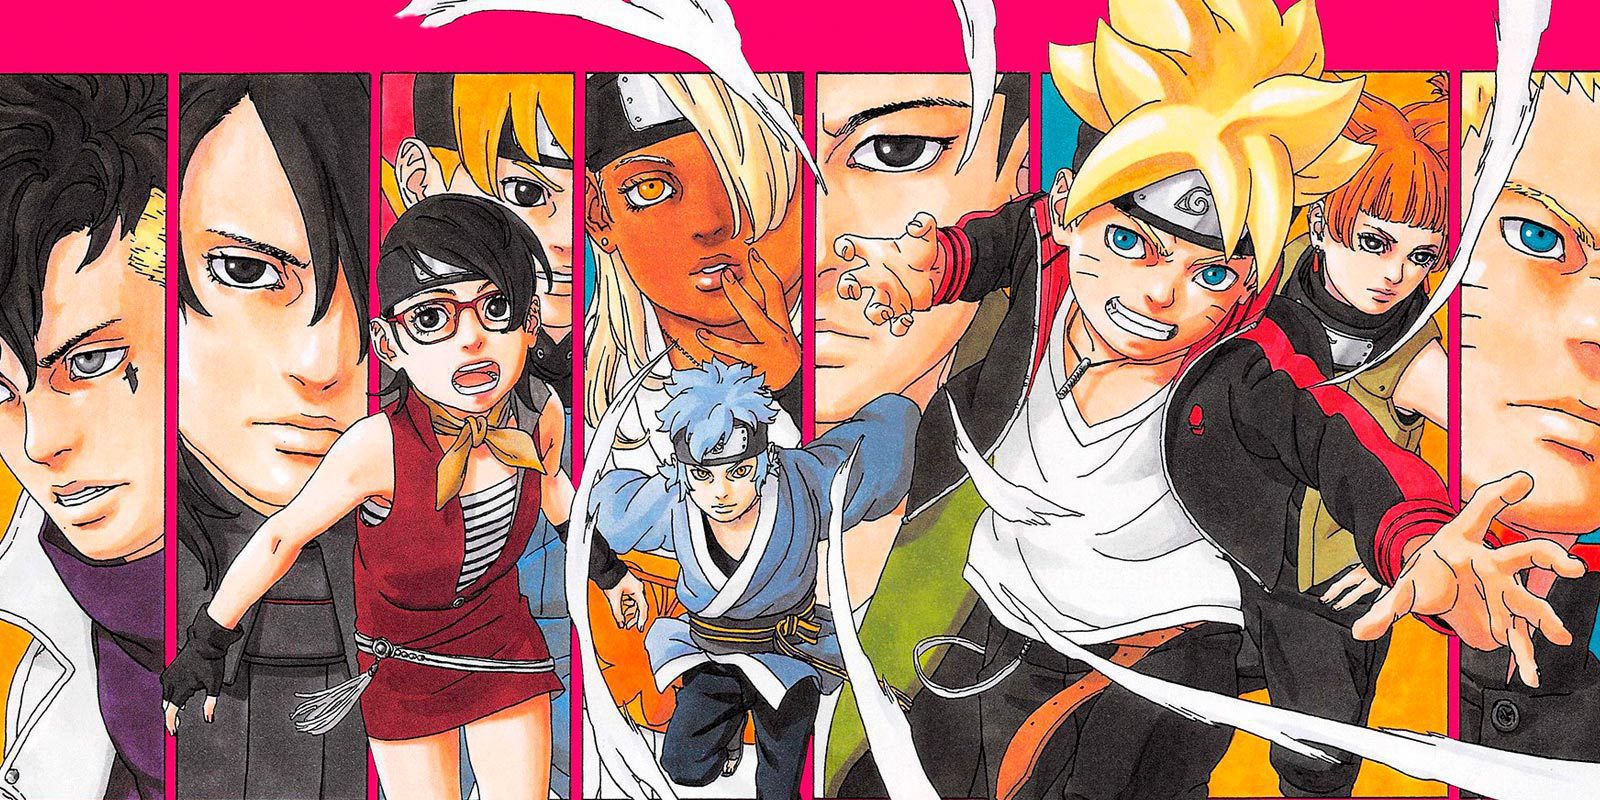 Boruto: Naruto Next Generations estrena su anime el próximo 5 de abril